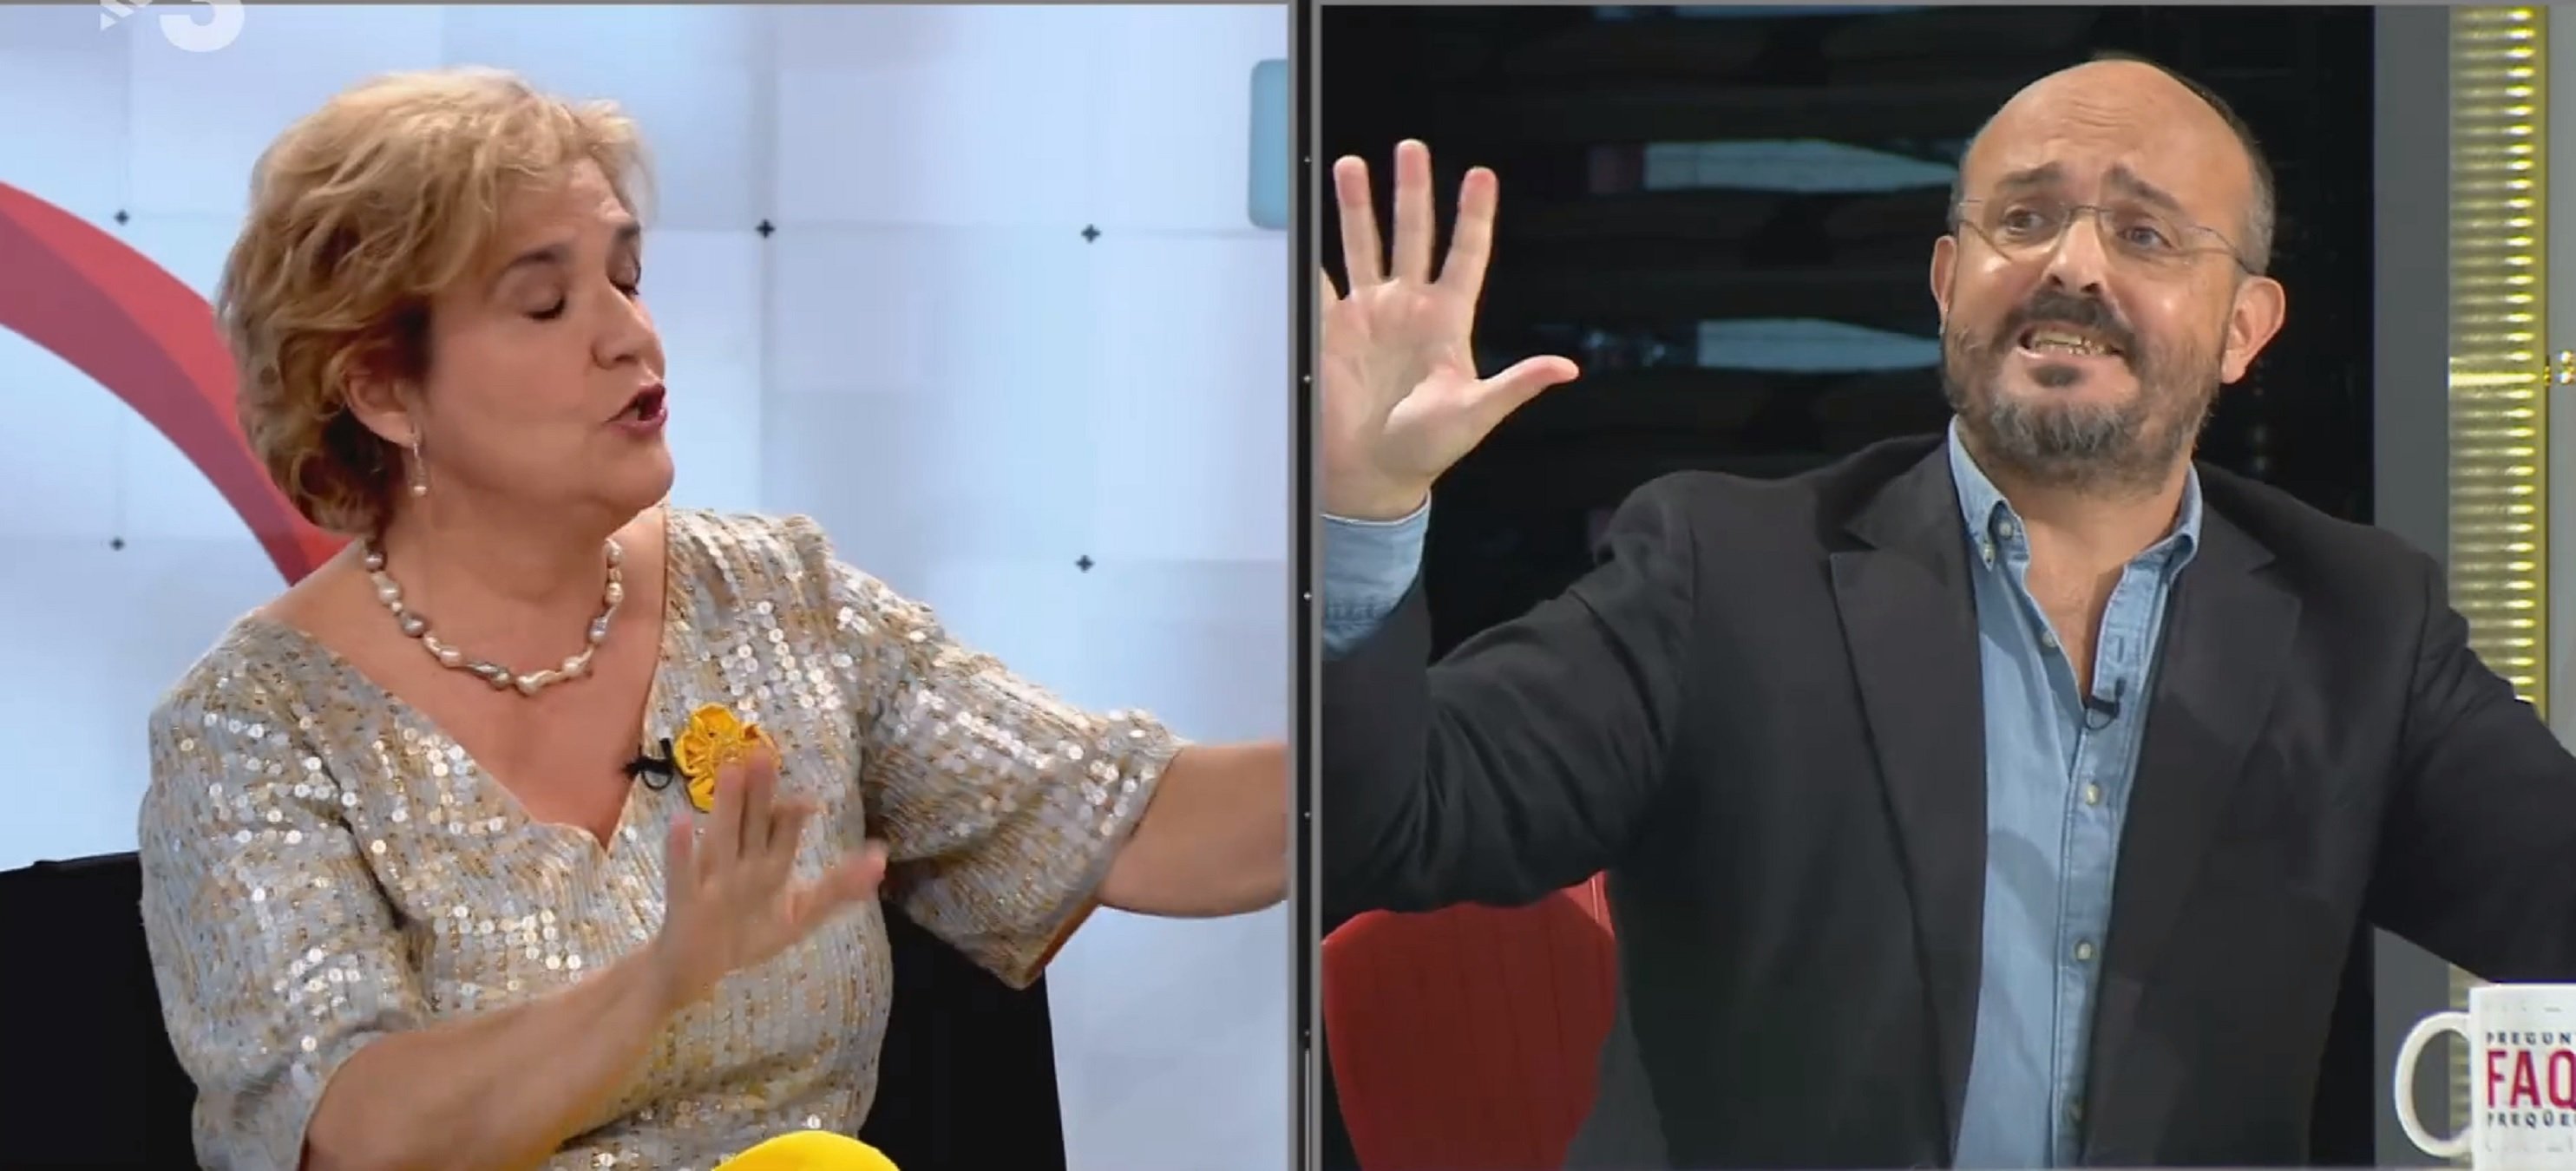 Pilar Rahola destroza a Alejandro Fernández en TV3 que la insulta en directo